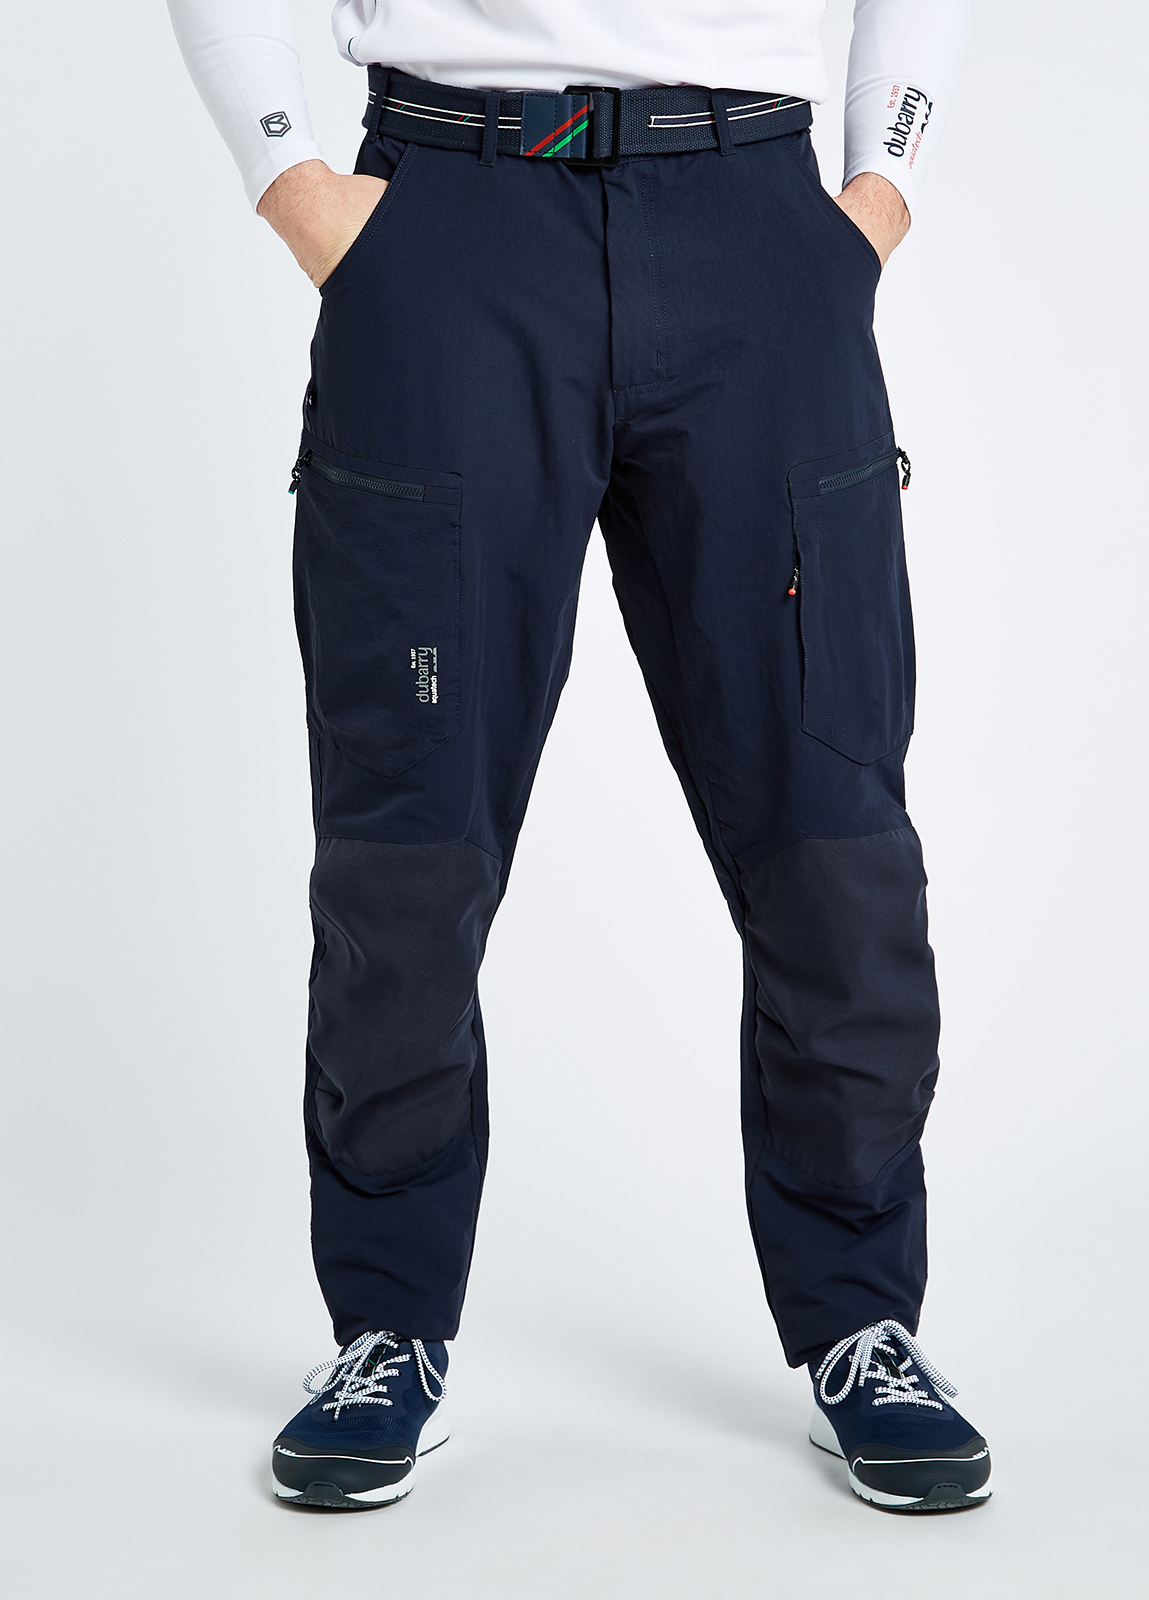 Dubrovnik - Men's Technical trousers Regular - Navy